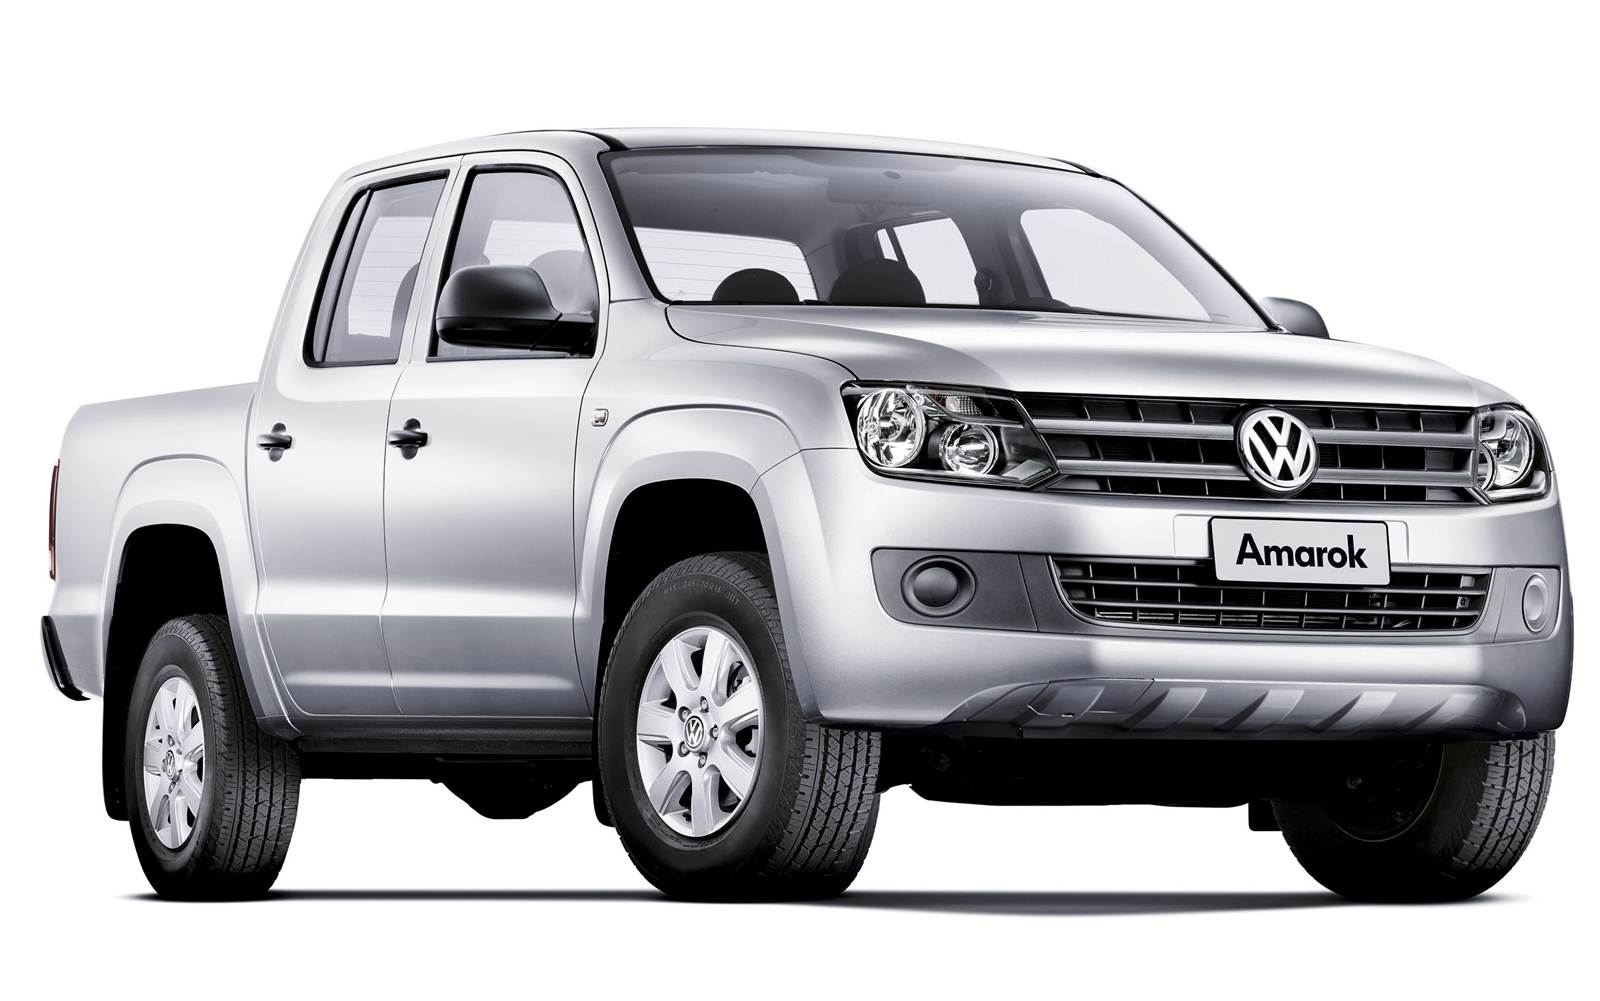 Volkswagen Amarok 2014 fotos, preços e especificações